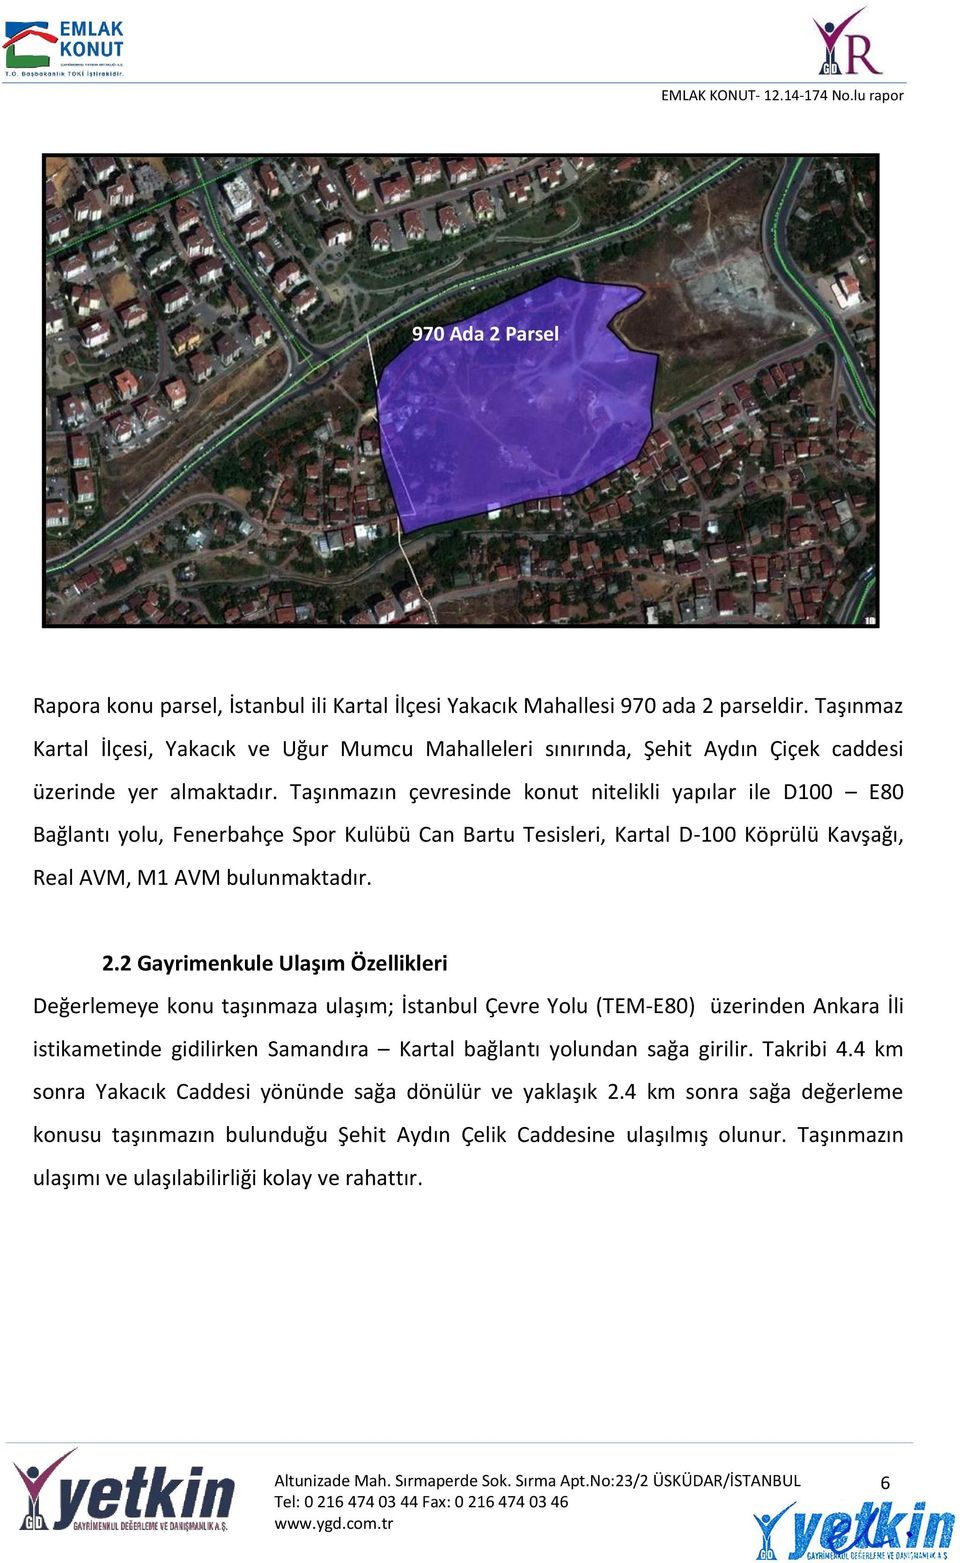 Taşınmazın çevresinde konut nitelikli yapılar ile D100 E80 Bağlantı yolu, Fenerbahçe Spor Kulübü Can Bartu Tesisleri, Kartal D-100 Köprülü Kavşağı, Real AVM, M1 AVM bulunmaktadır. 2.